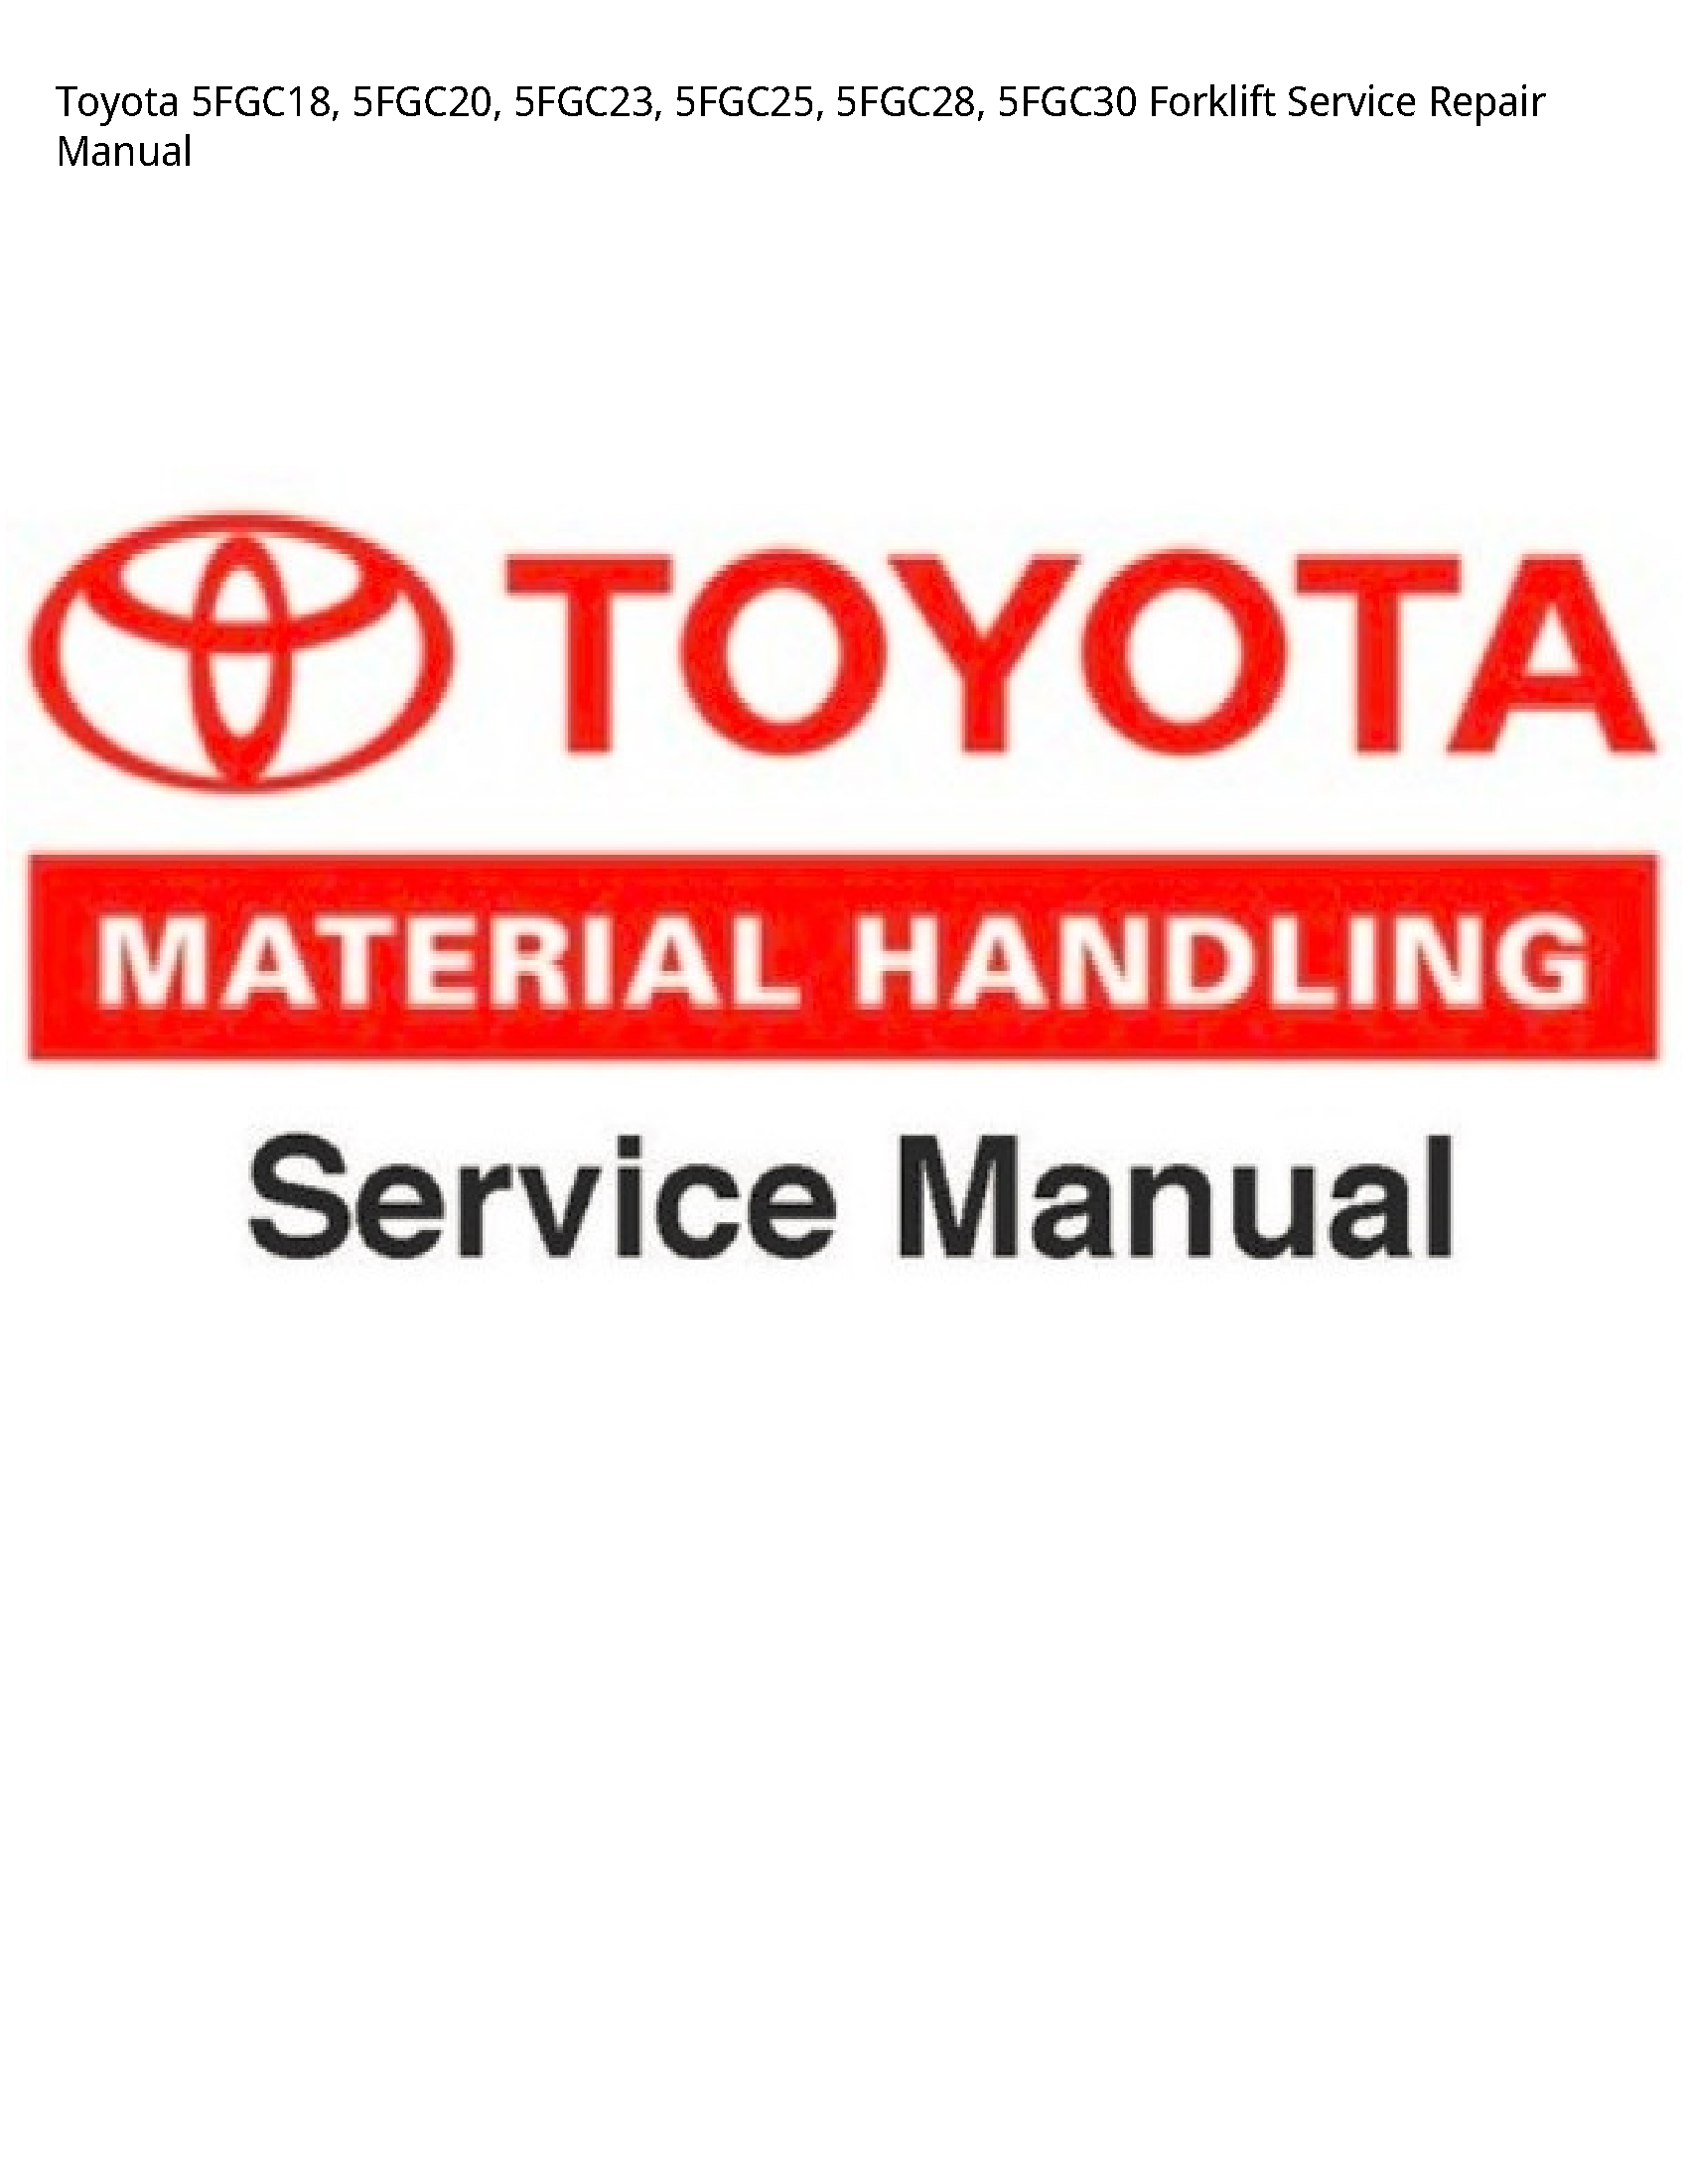 Toyota 5FGC18 Forklift manual